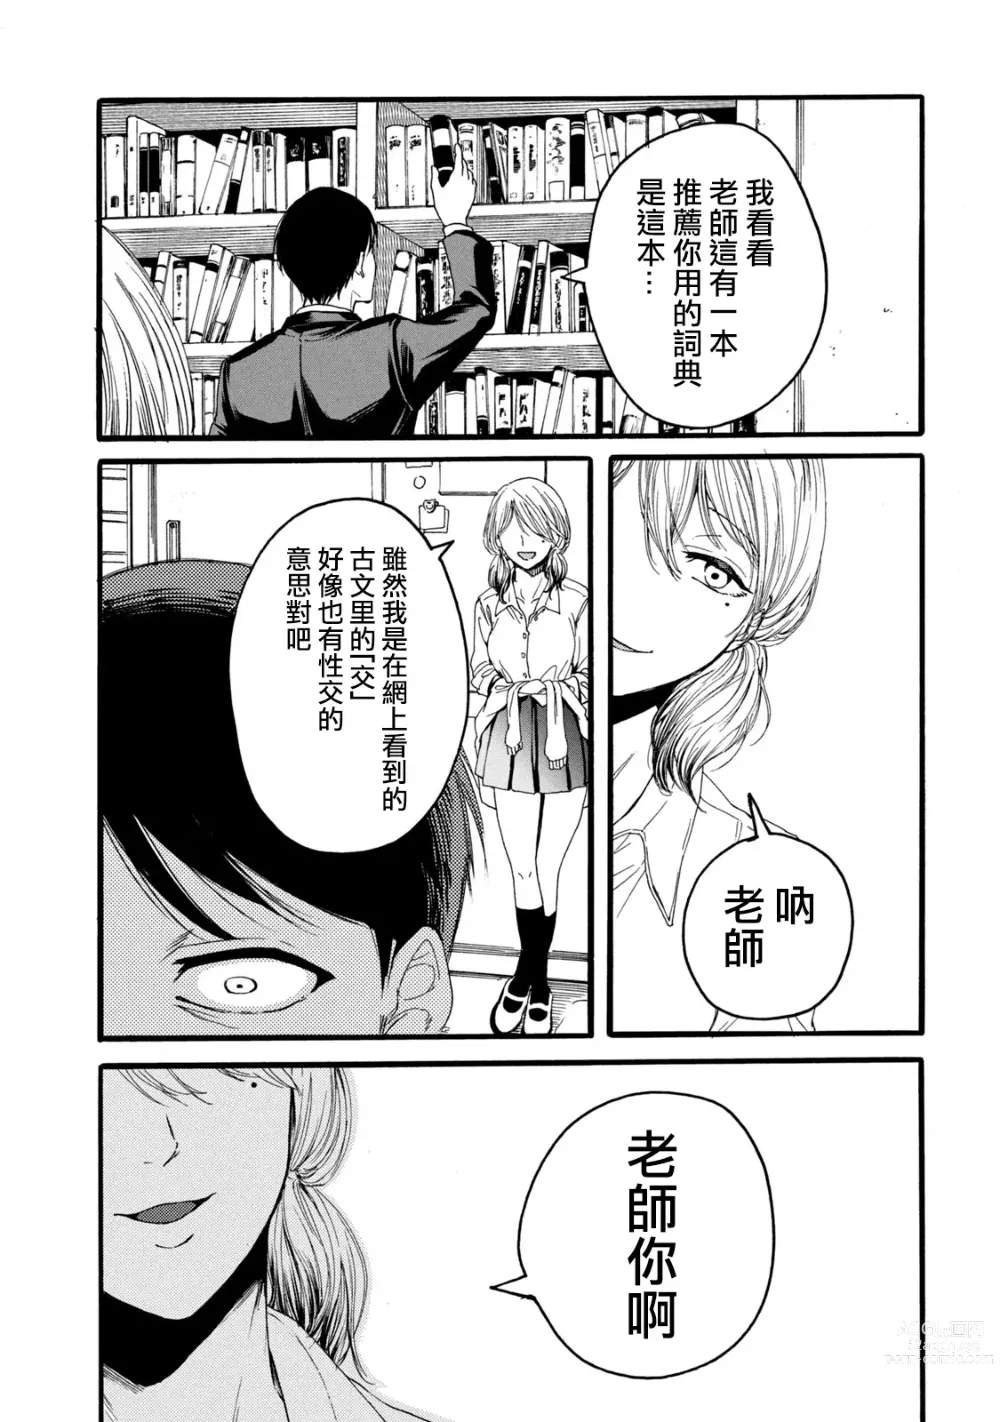 Page 29 of manga 百合花園也有蟲 第1-2卷